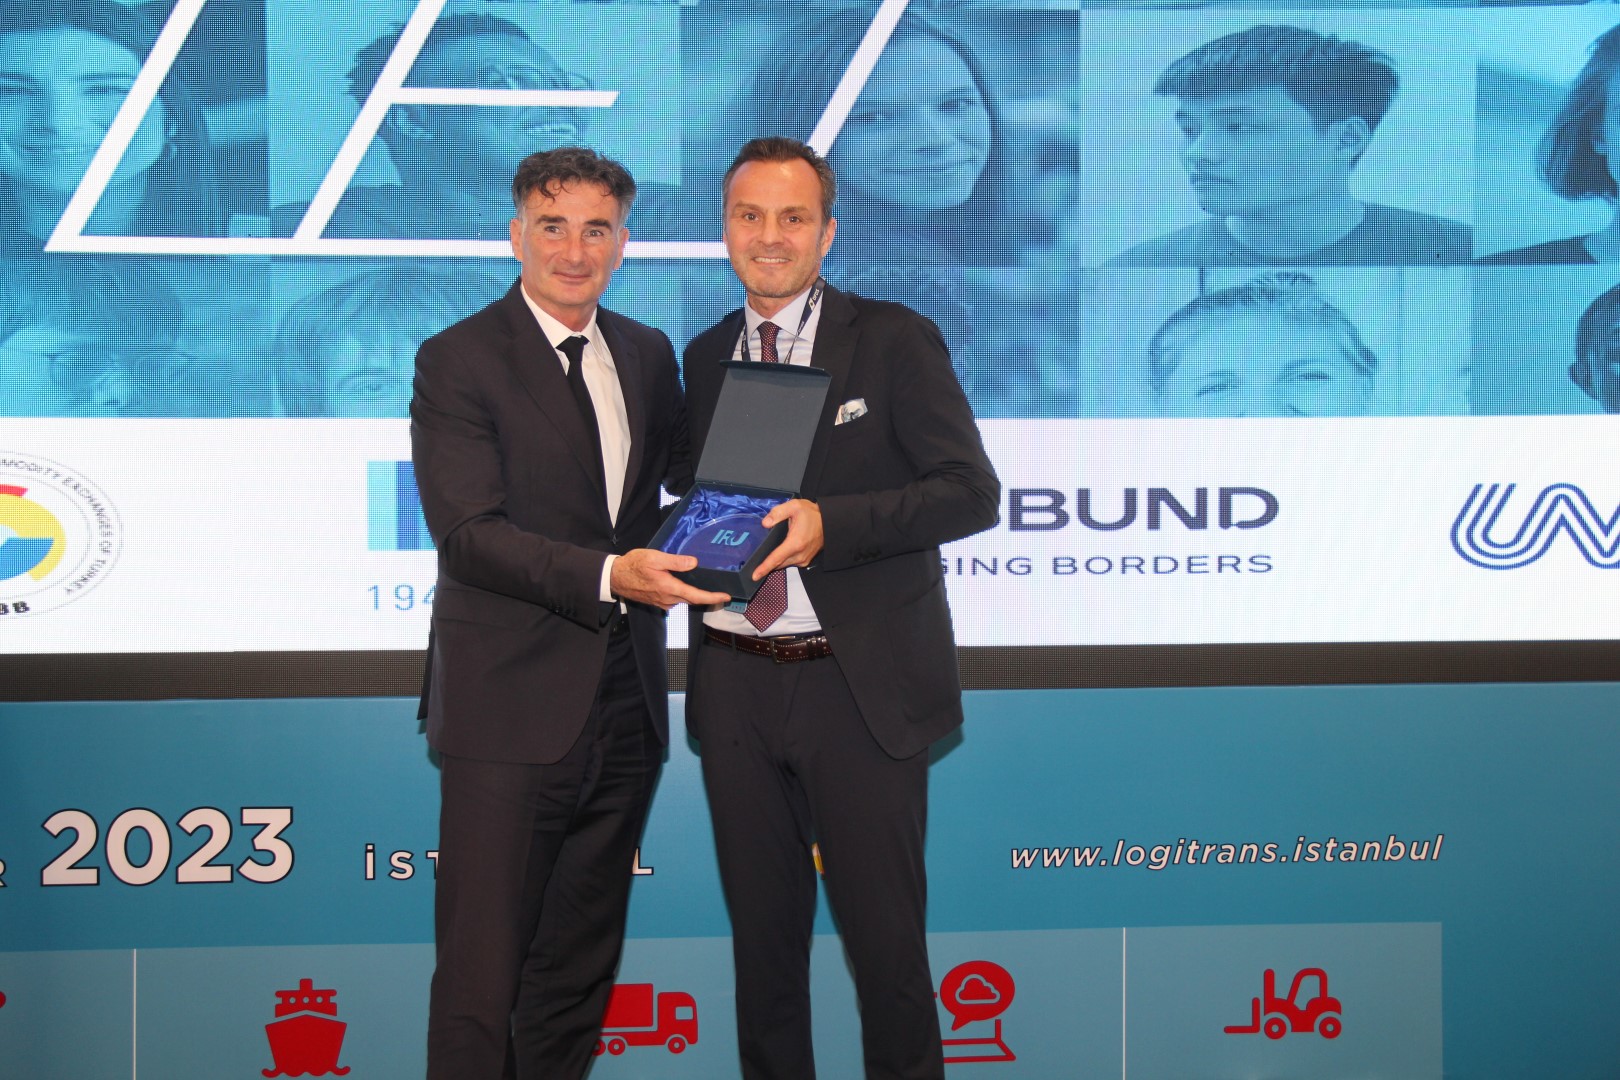 DFDS’e Uluslararası Logitrans Fuarı’nda Sektörün Geleceğine Yön Verenler ödülü